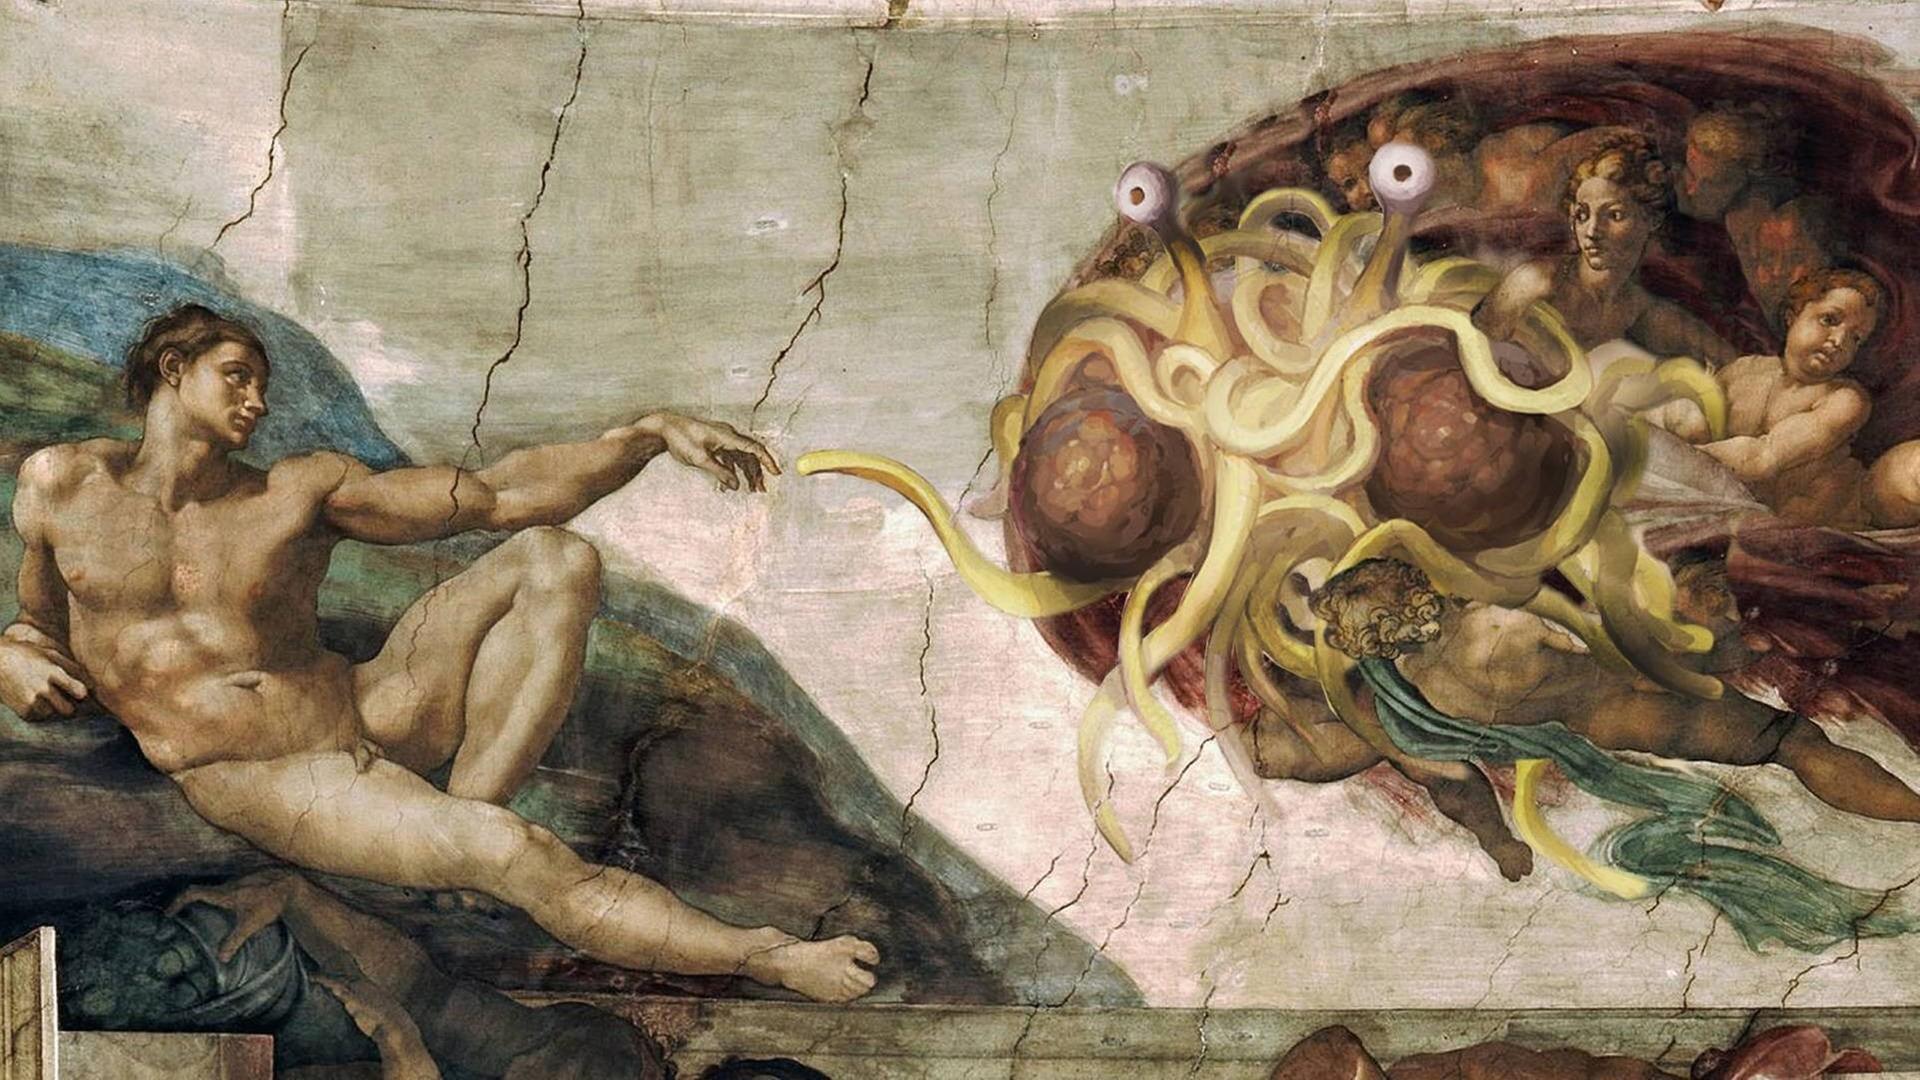 Fliegendes Spaghettimonster - das Bild entstand in Anlehnung an Michaelangelos "Die Erschaffung Adams".